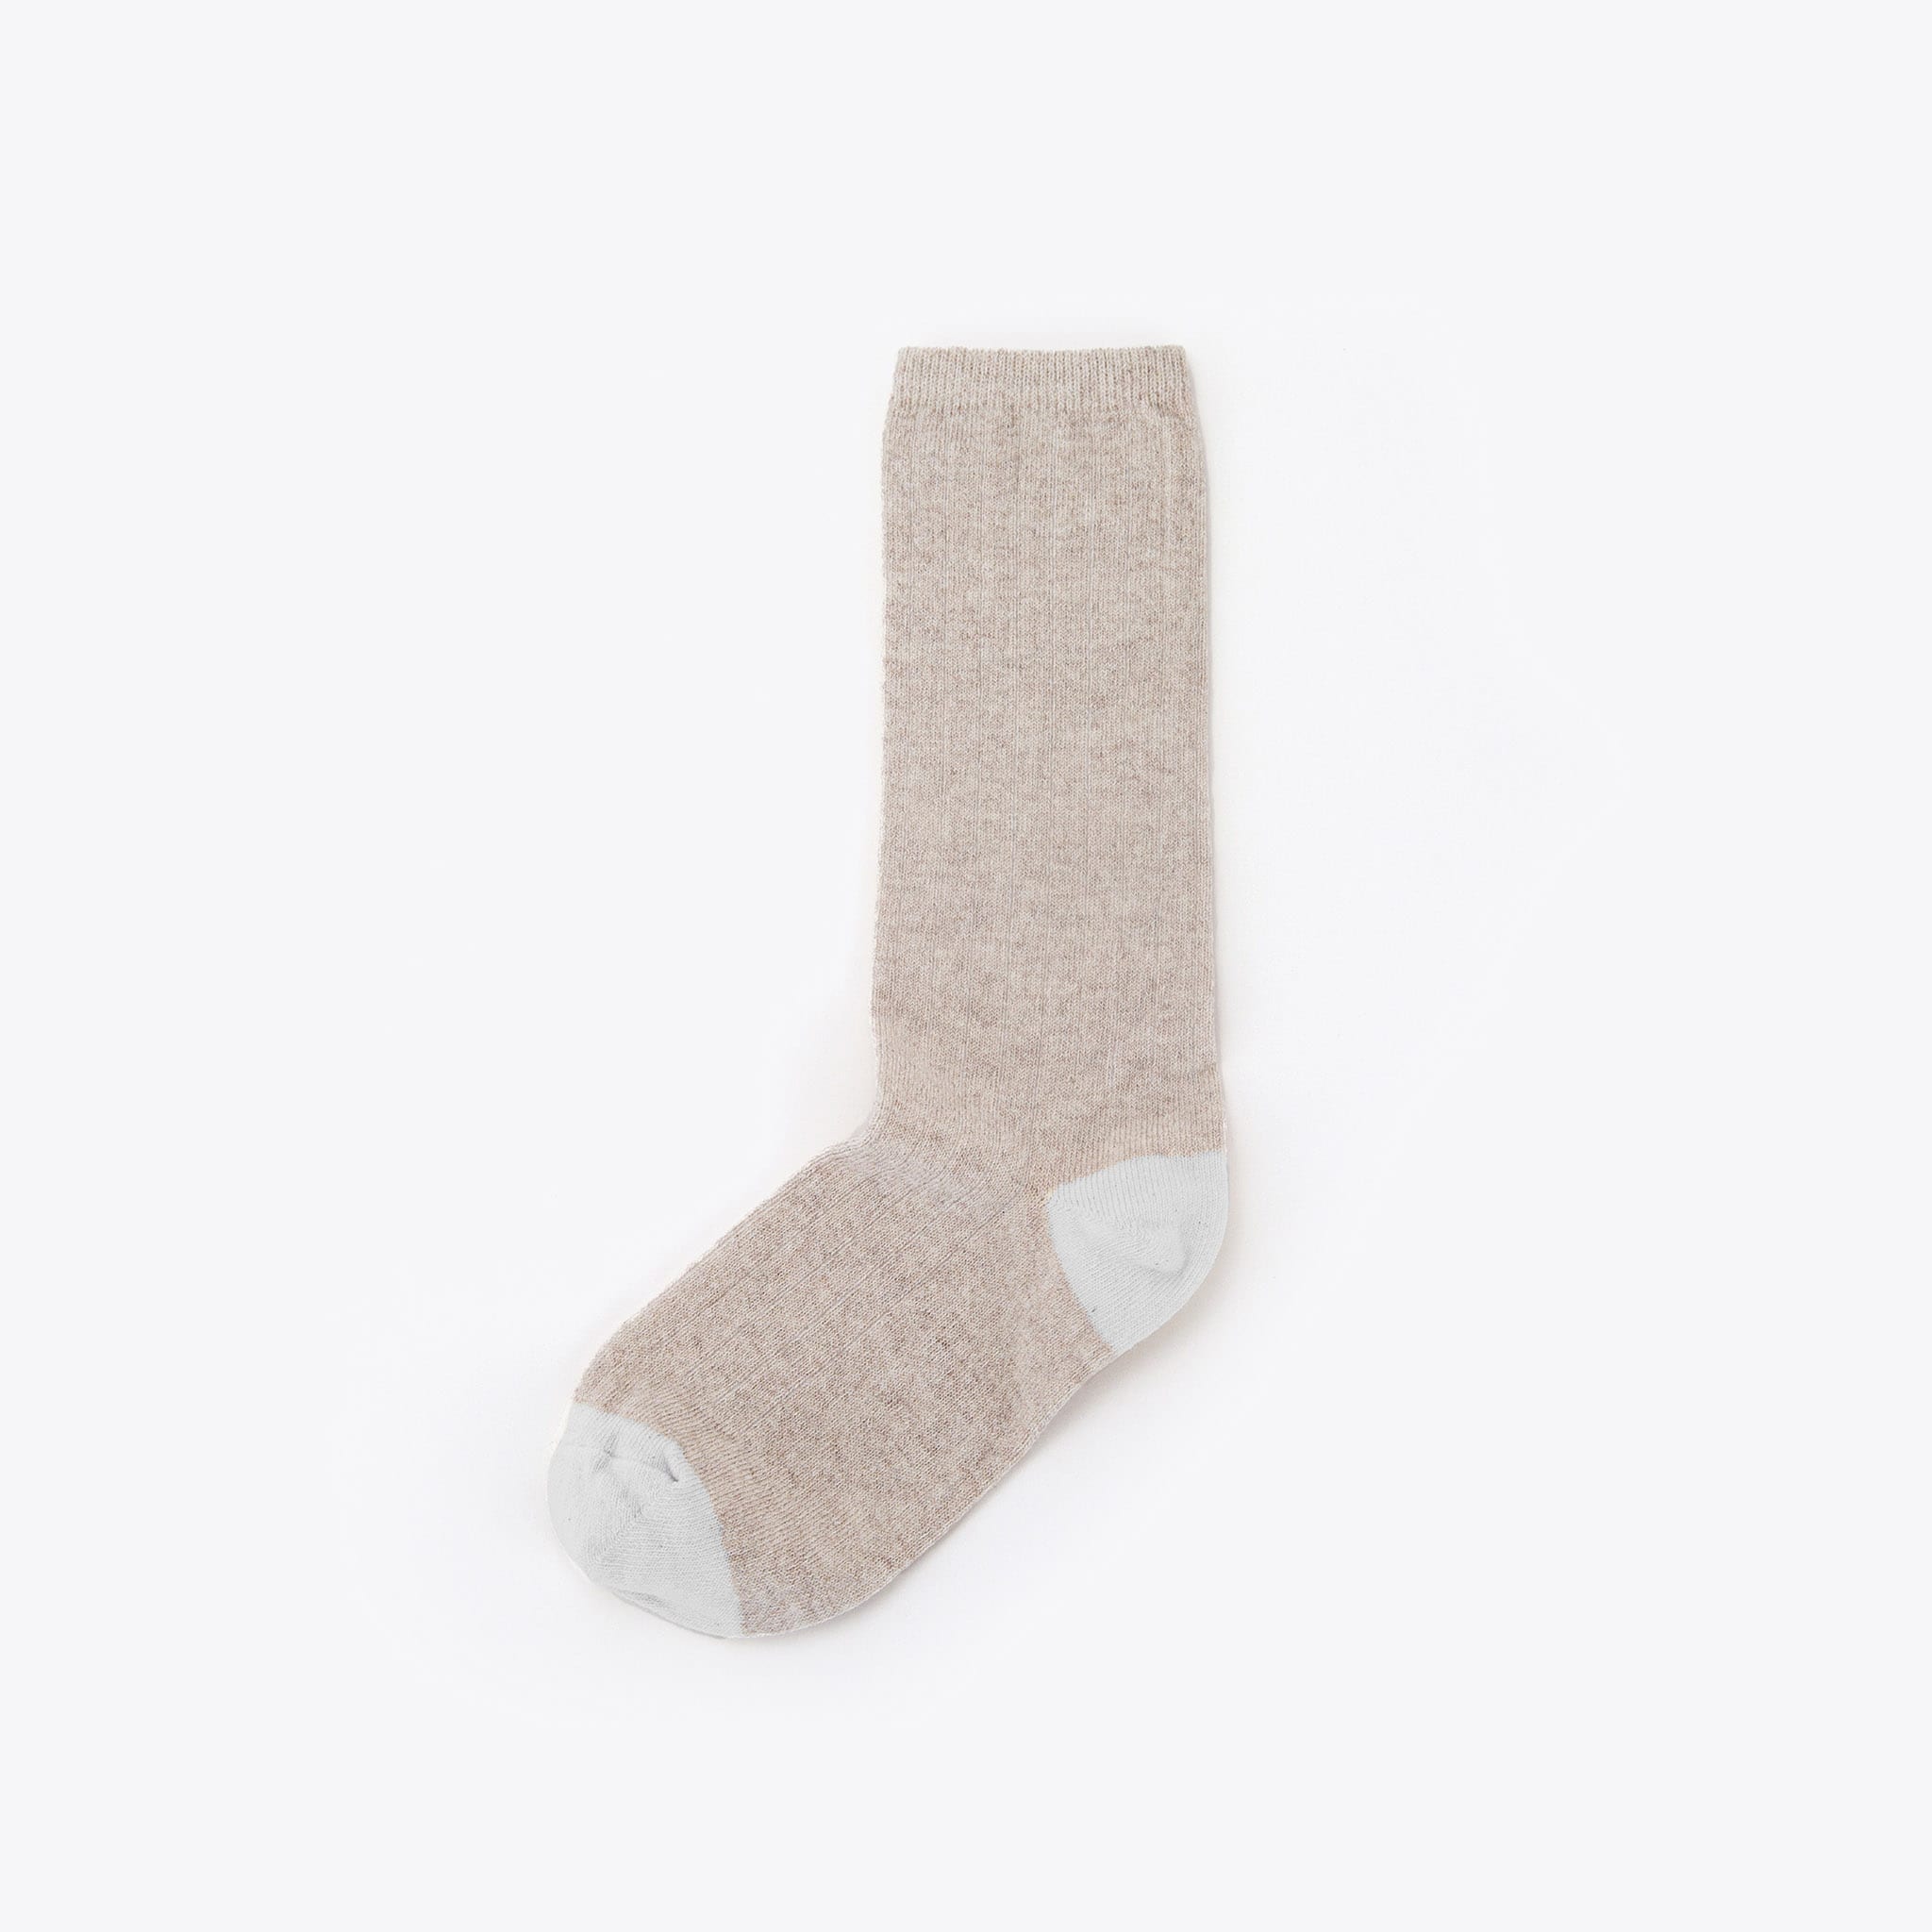 Nisolo Cotton Crew Sock Tan/White